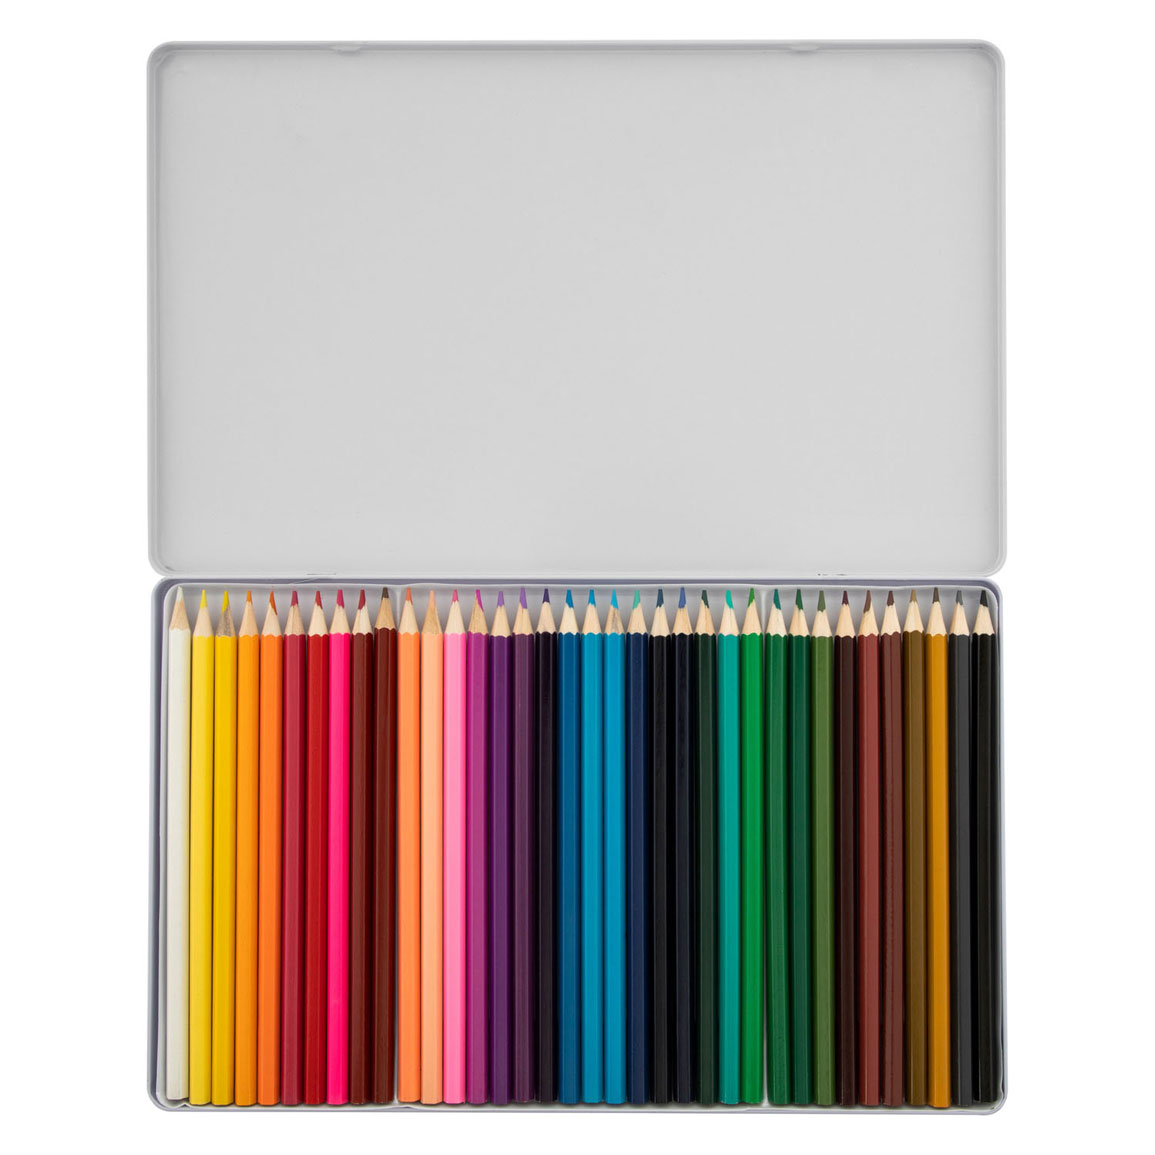 Crayons de couleur en boîte métallique, 36 pcs.